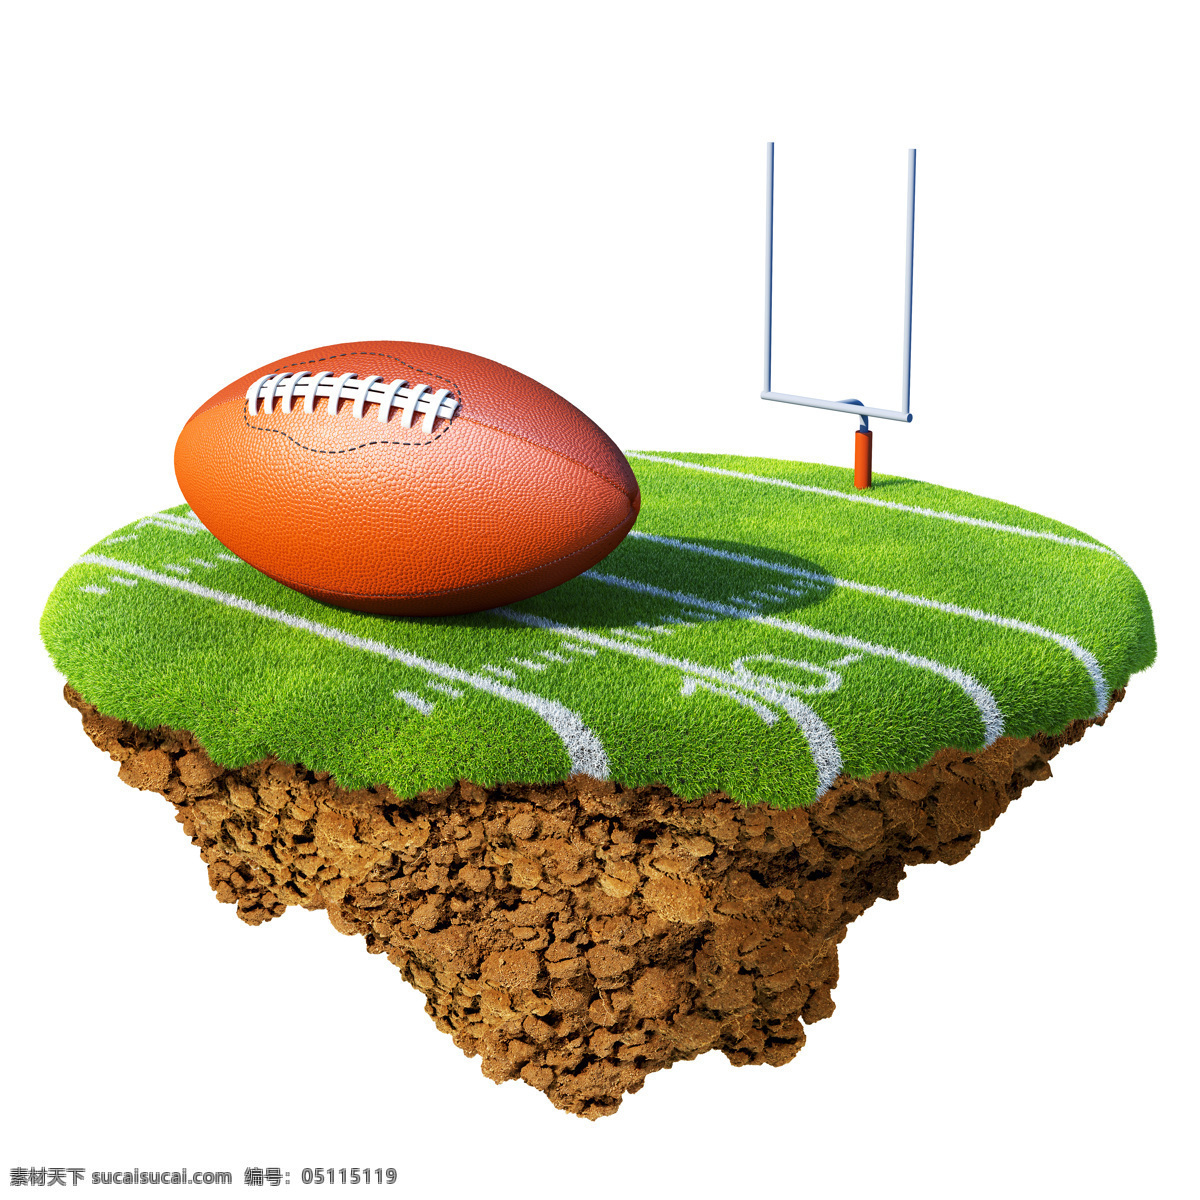 背景 草地 低碳 橄榄球 环保 环保素材 节能 绿色 橄榄 球场 设计素材 模板下载 绿色橄榄球场 生态 土壤 地表 绿草 海报 环保公益海报